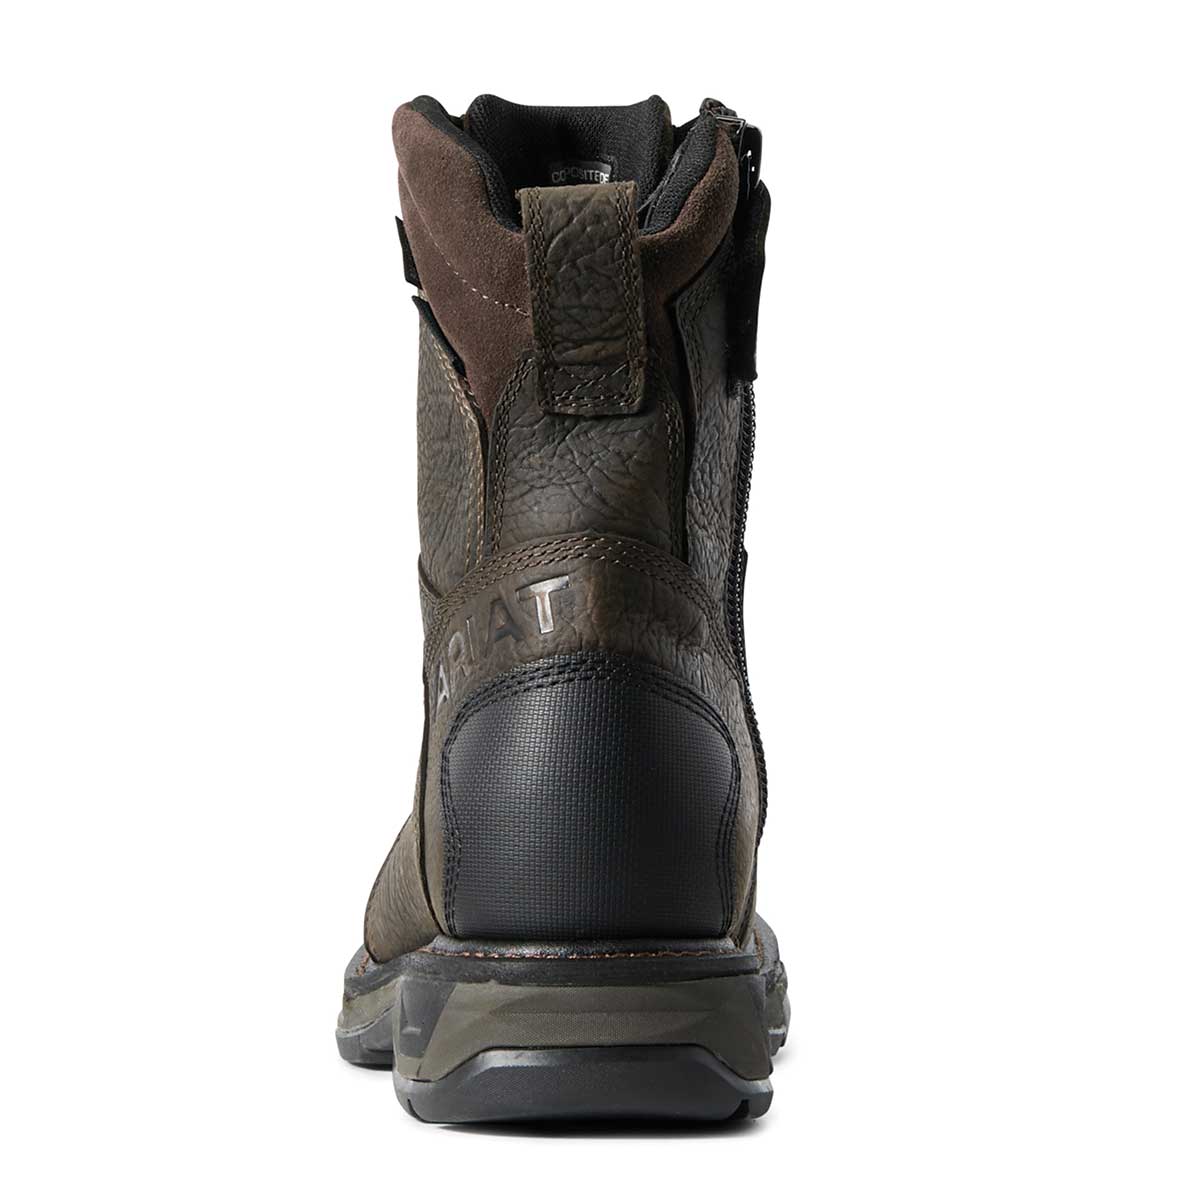 Ariat Men's 8" Workhog XT Side-Zip Boots